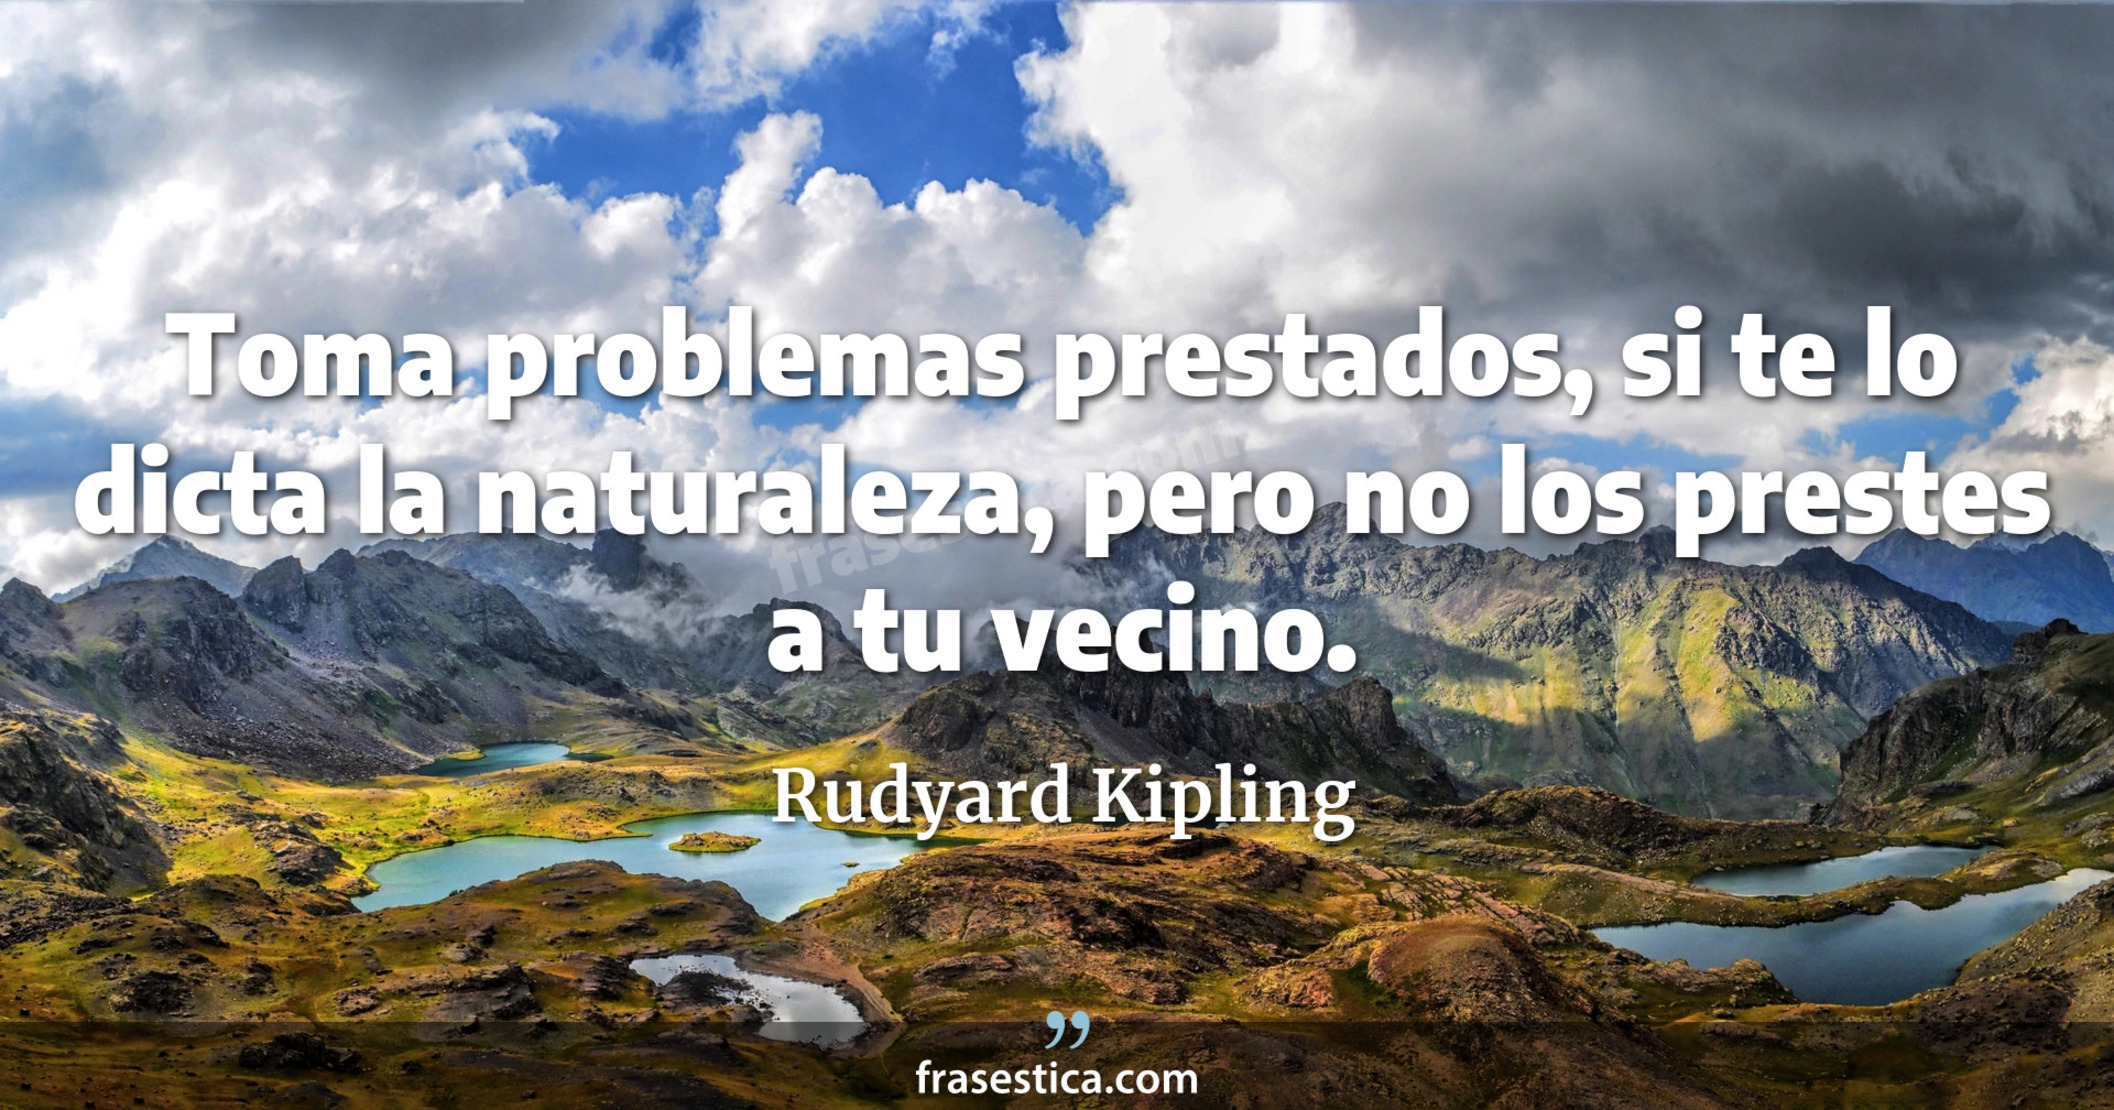 Toma problemas prestados, si te lo dicta la naturaleza, pero no los prestes a tu vecino. - Rudyard Kipling